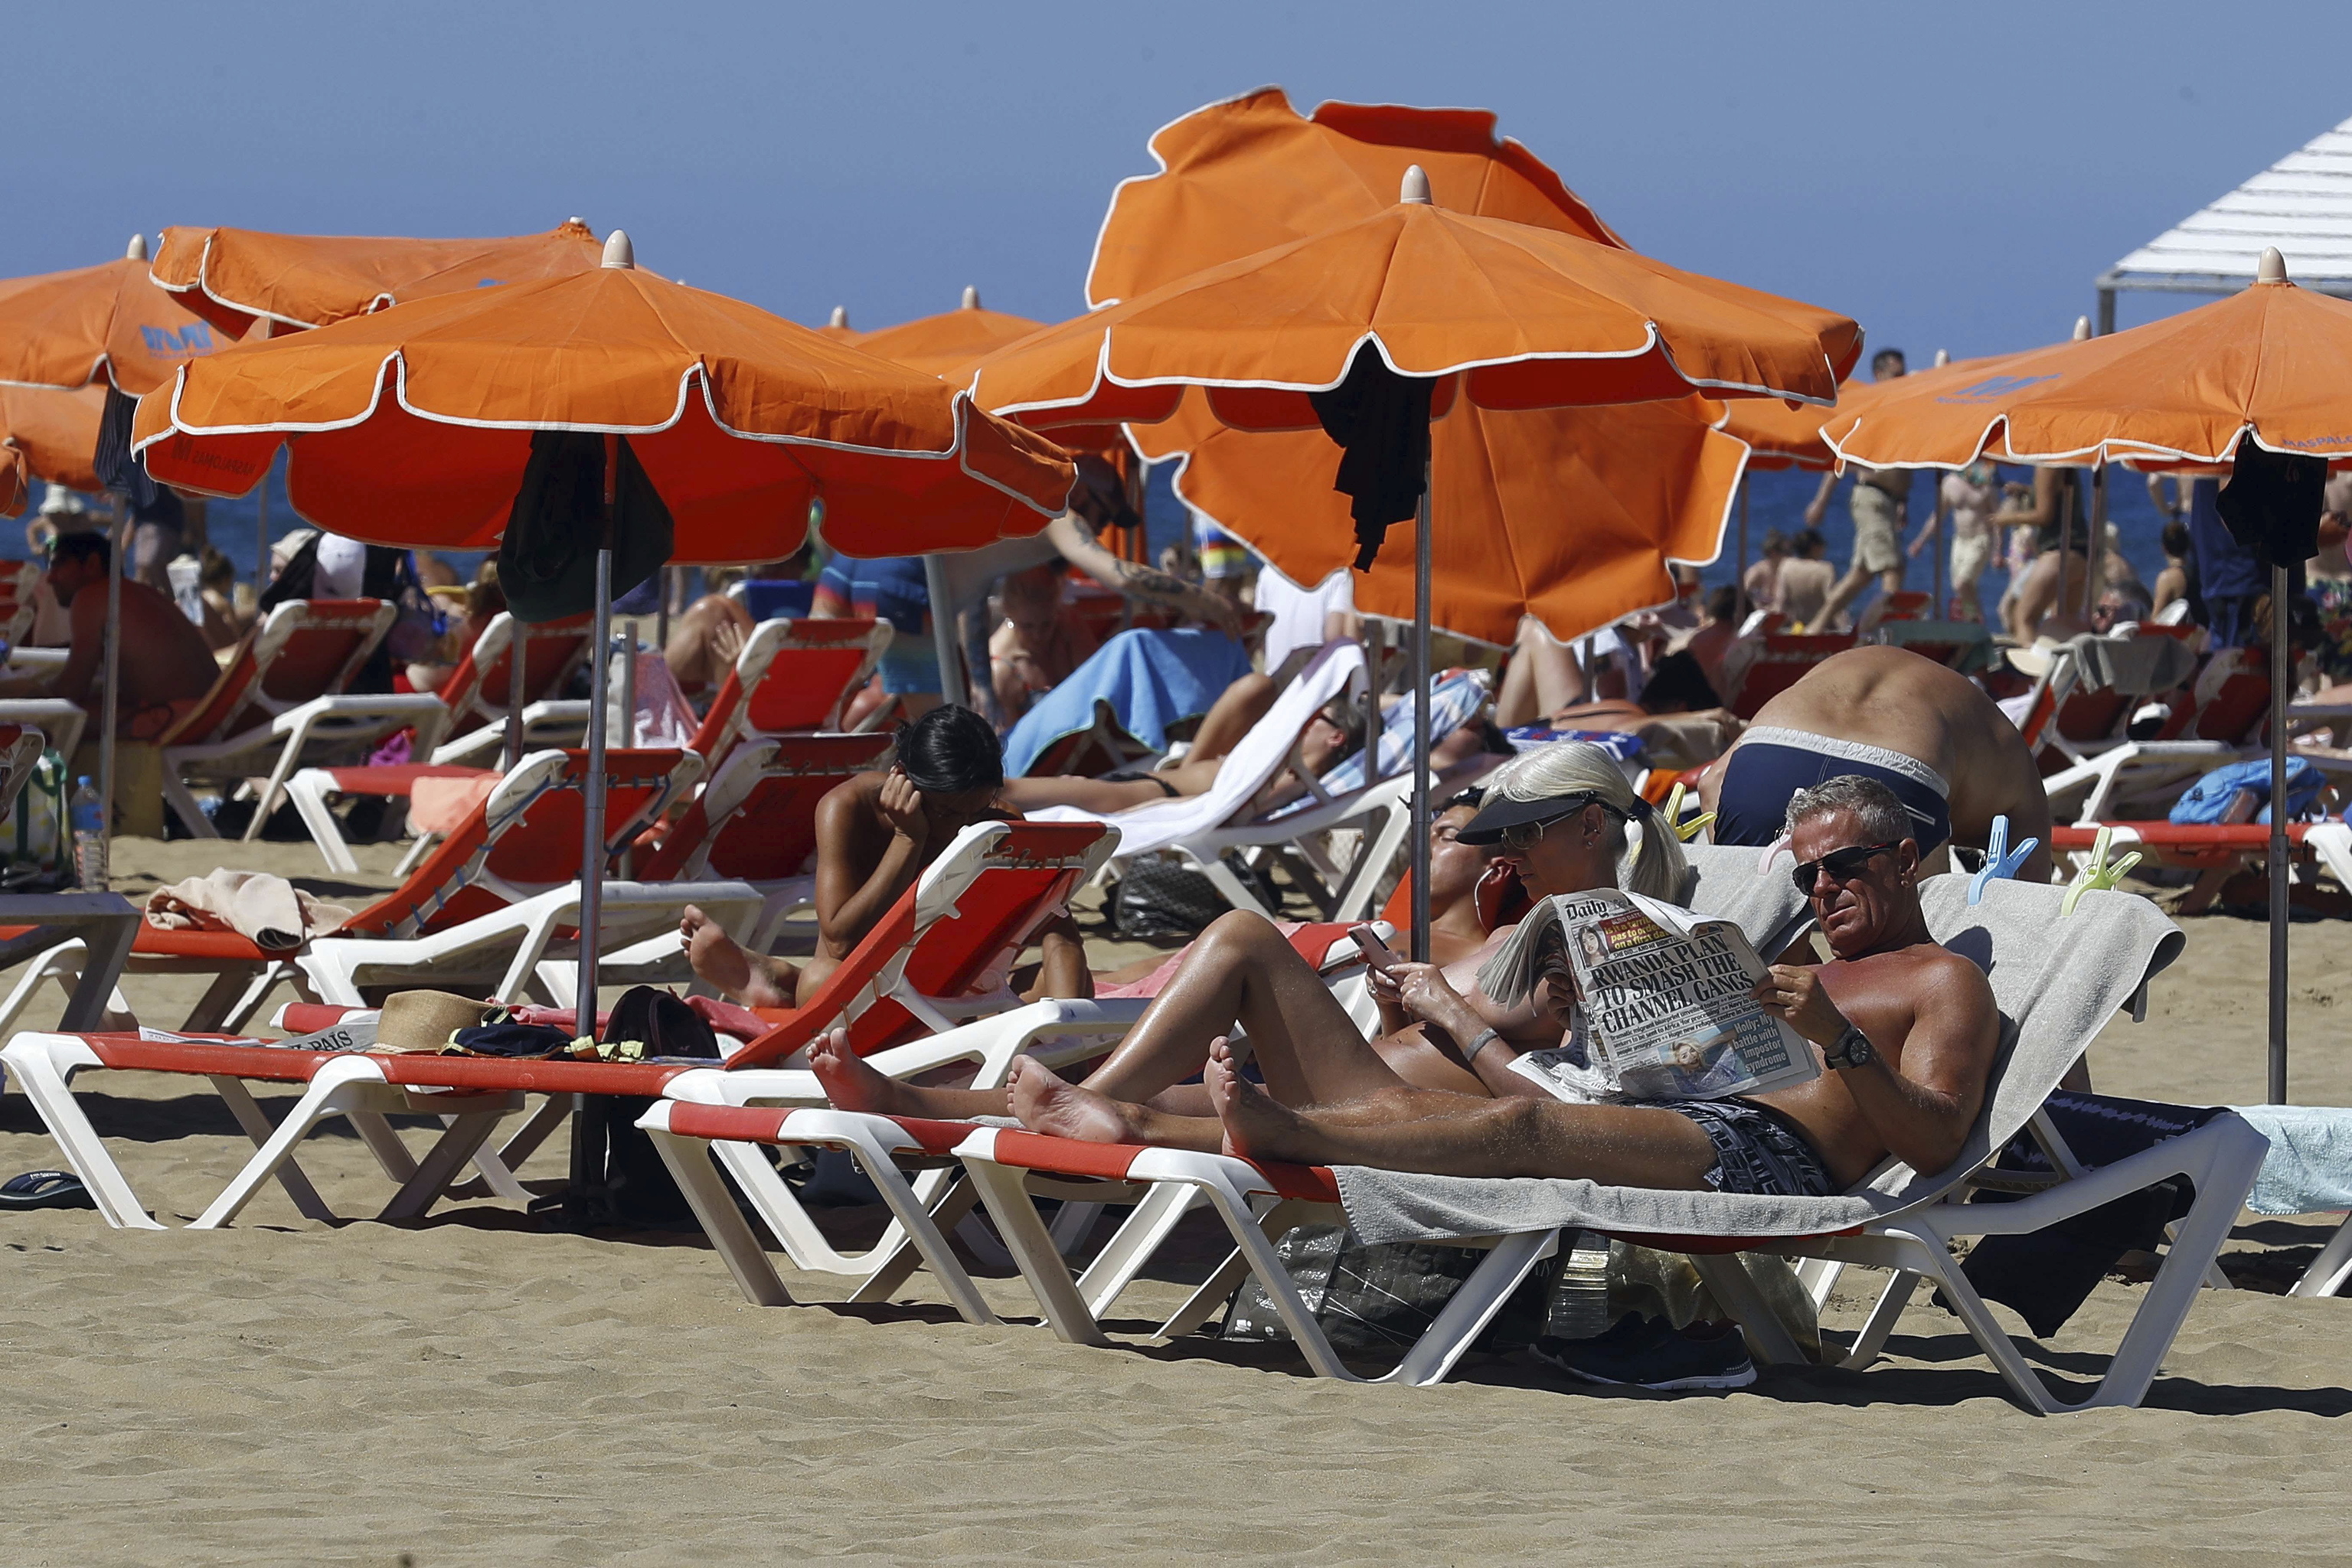 La playa de Maspalomas en Gran Canaria llena de turistas.